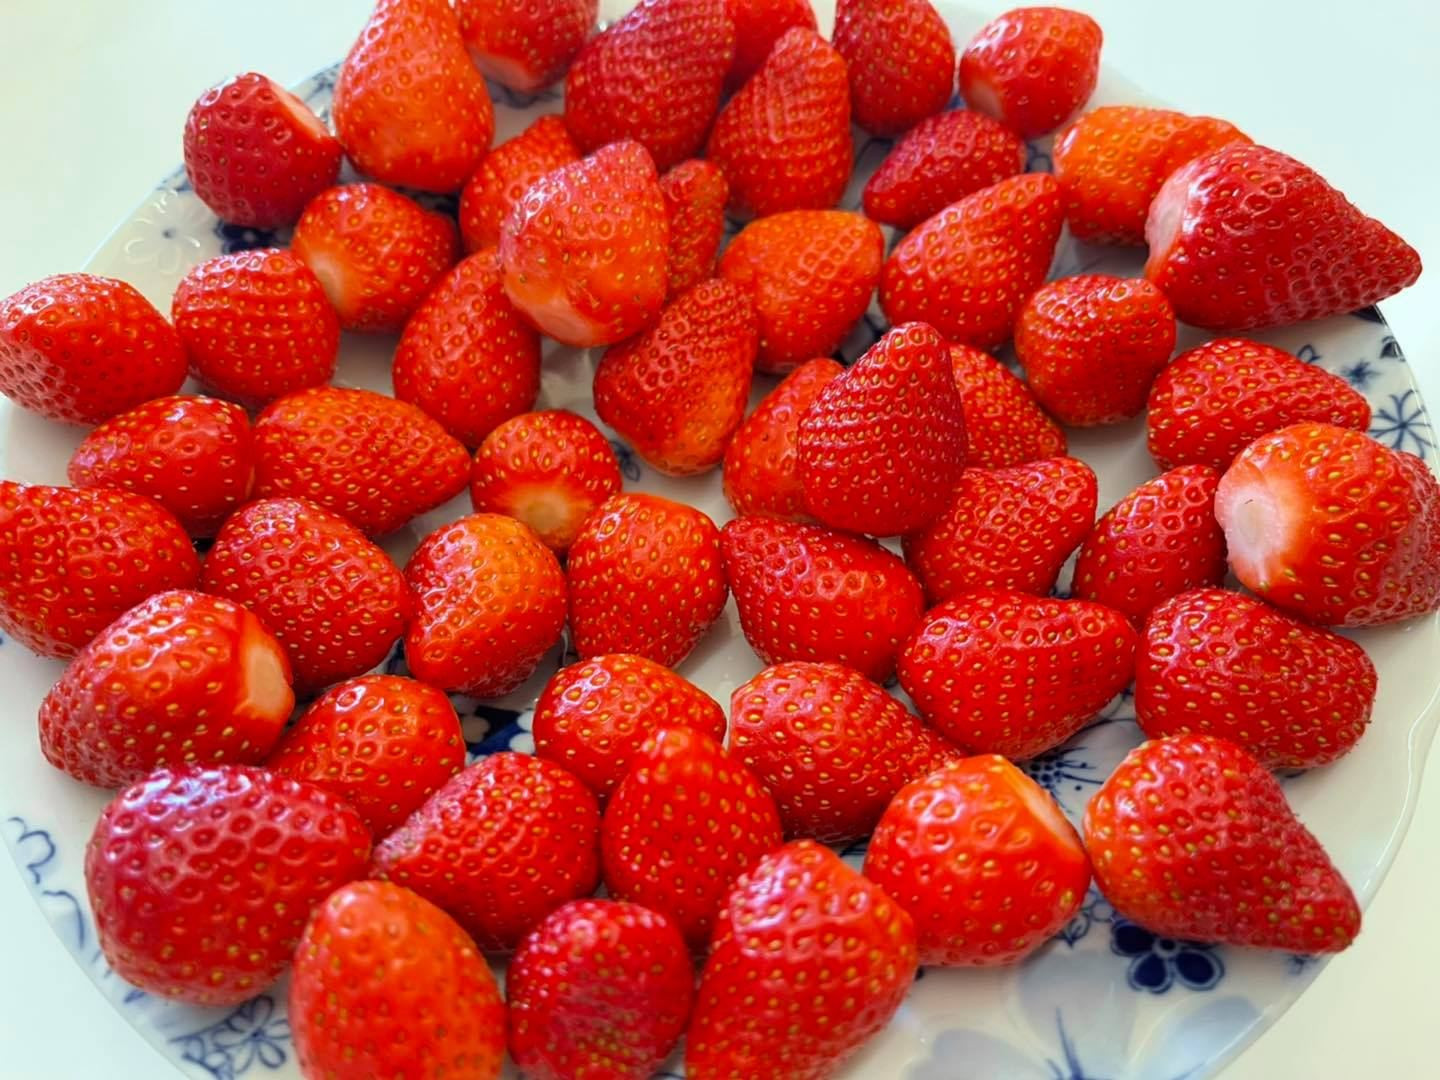 買回來的草莓如何處理與保存